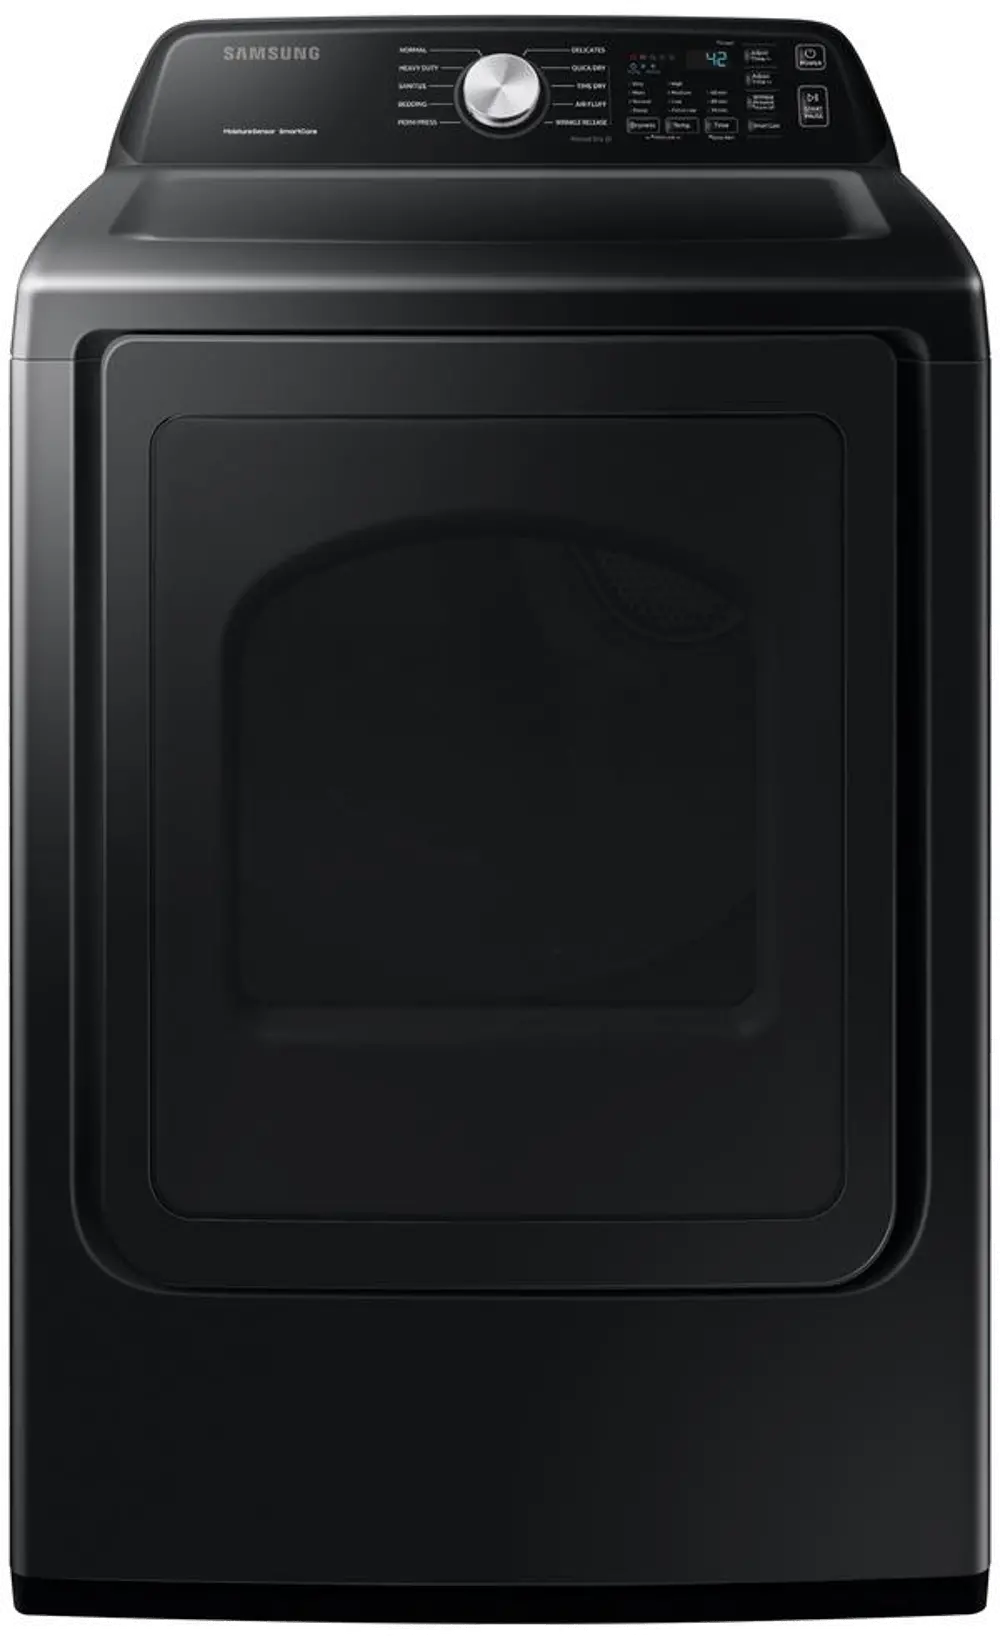 DVG45T3400V Samsung Large Capacity Gas Dryer with Sensor Dry - Brushed Black-1